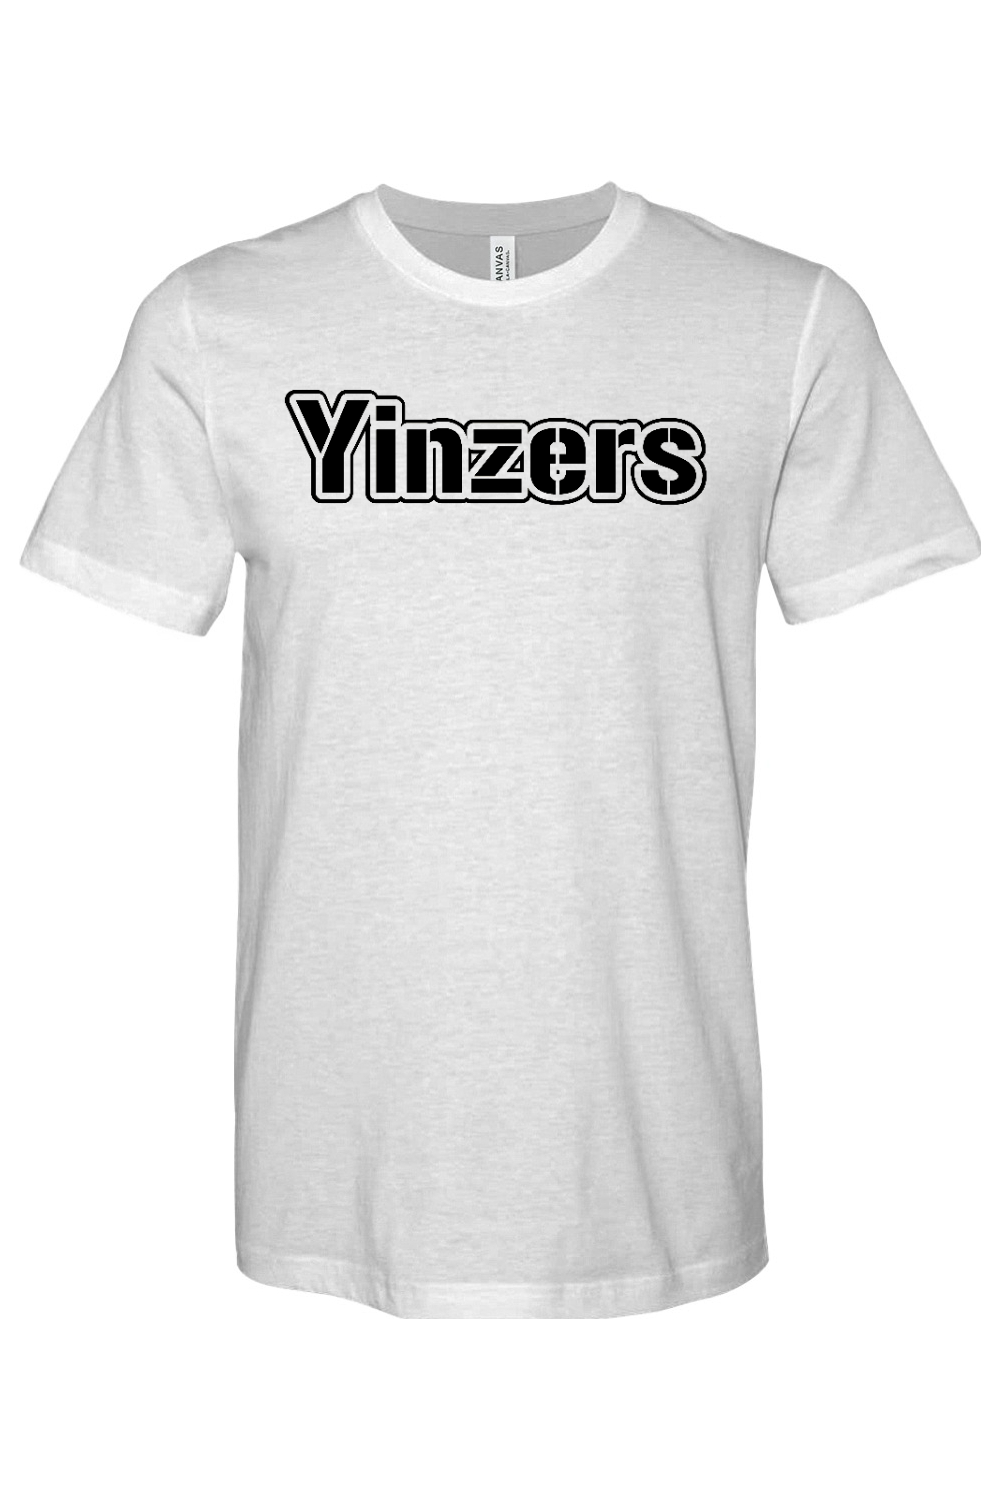 Yinzers Steel - Yinzylvania